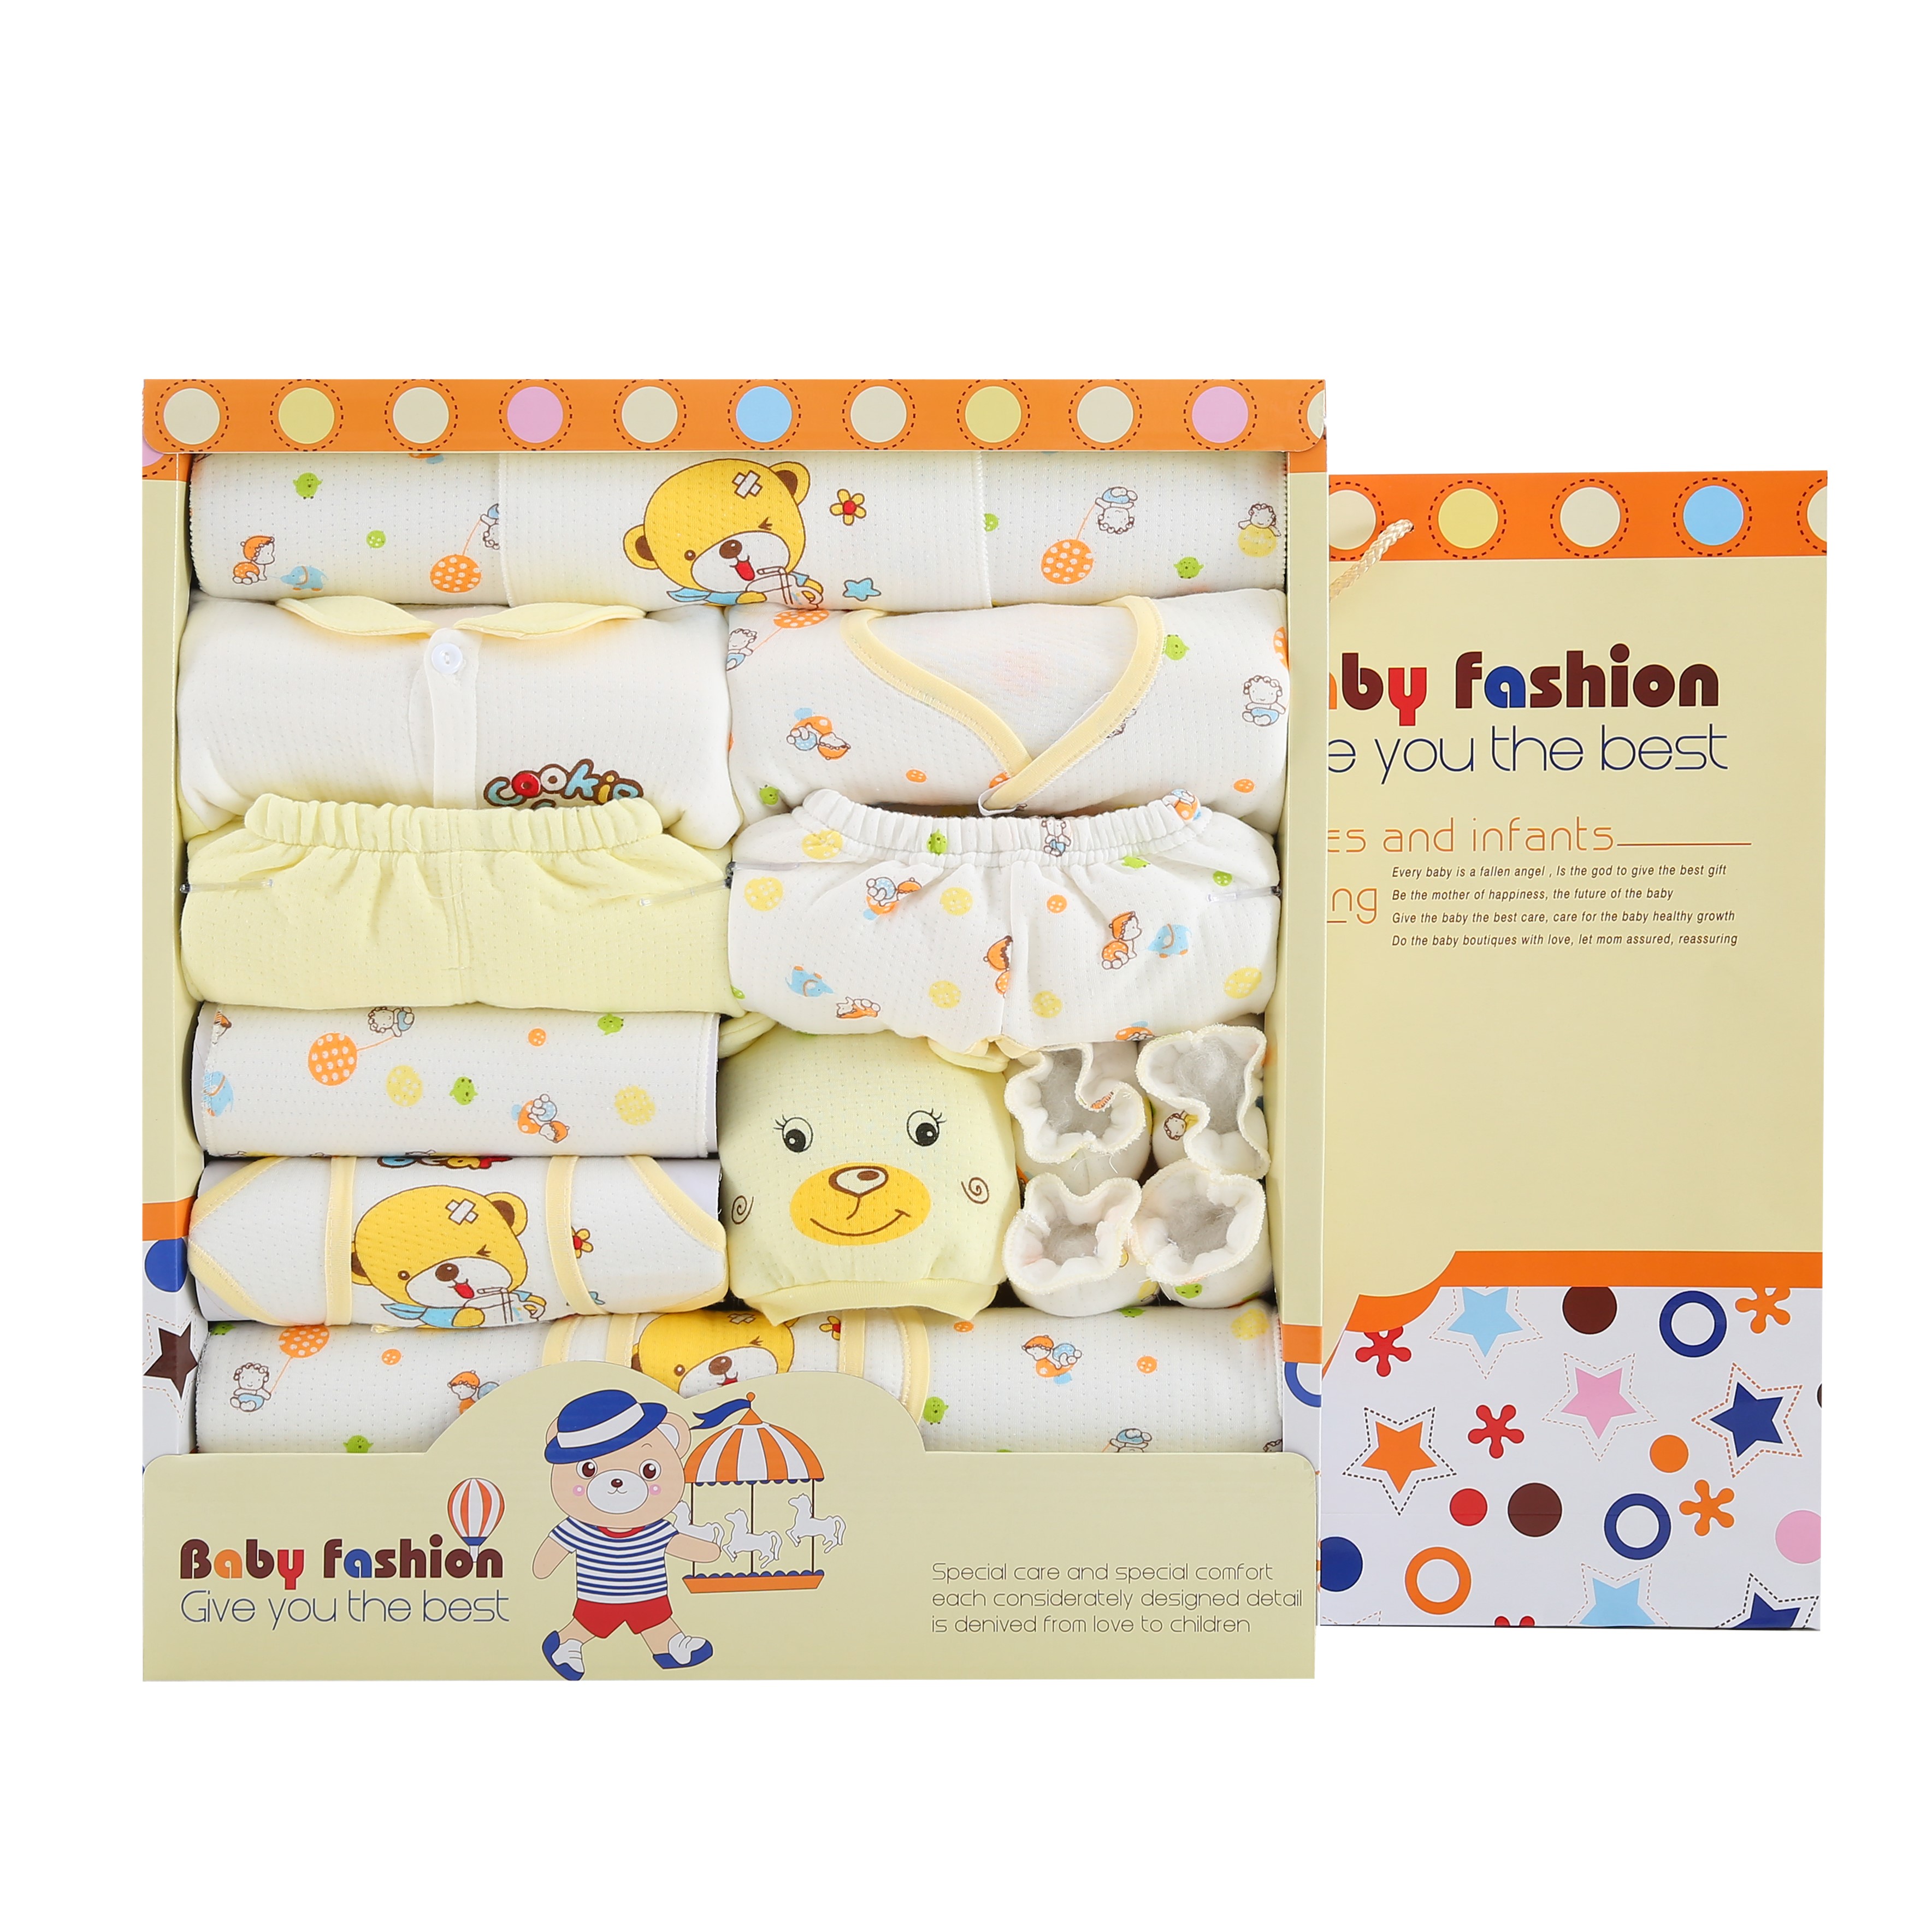 婴儿衣服纯棉0-3个月6新生儿礼盒套装秋冬装送礼初生满月宝宝用品